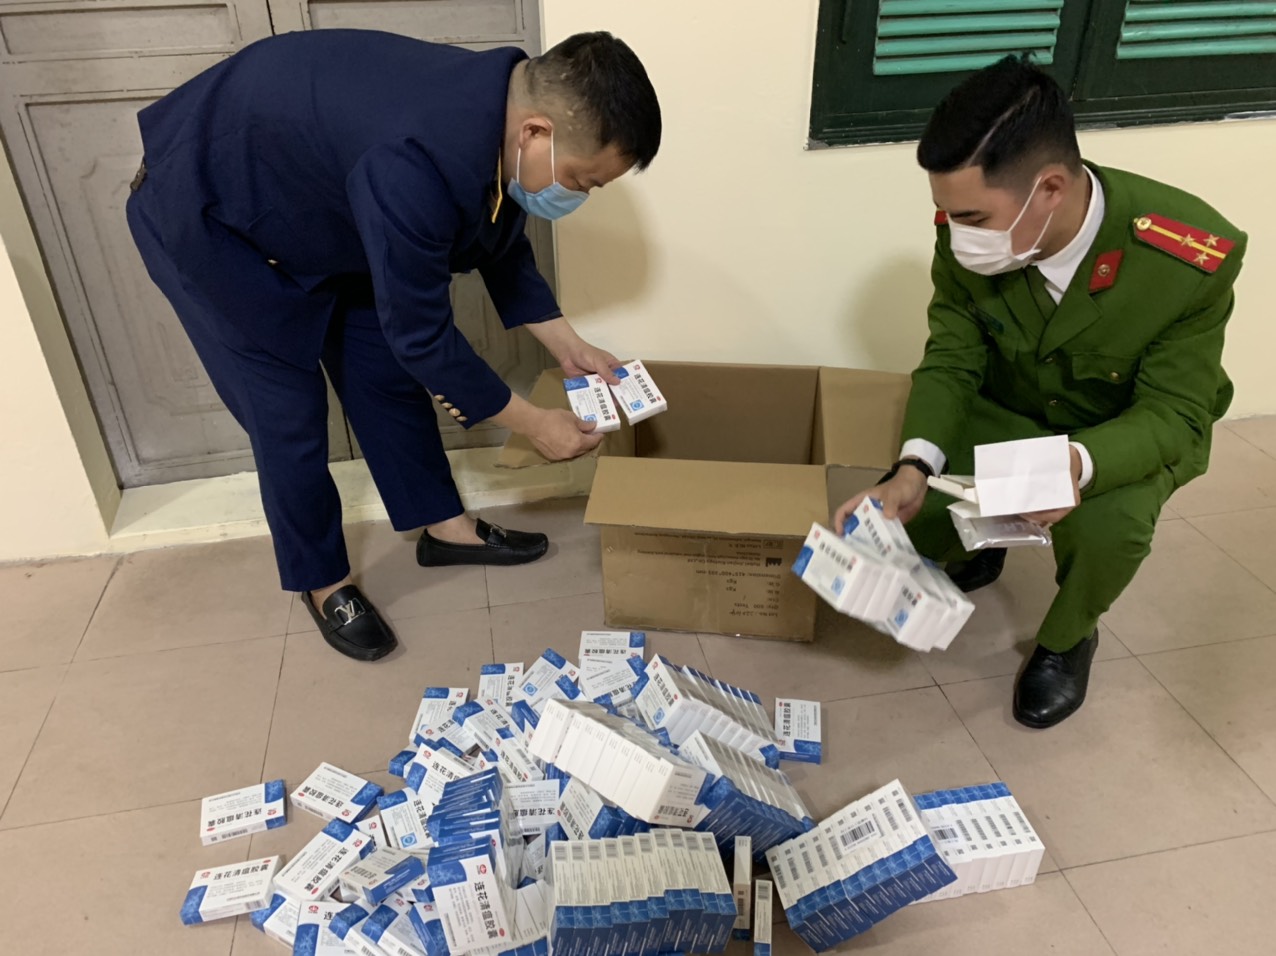 Thu giữ hàng ngàn kit test, hộp thuốc trị Covid-19 có chữ Trung Quốc nhập lậu - Ảnh 3.